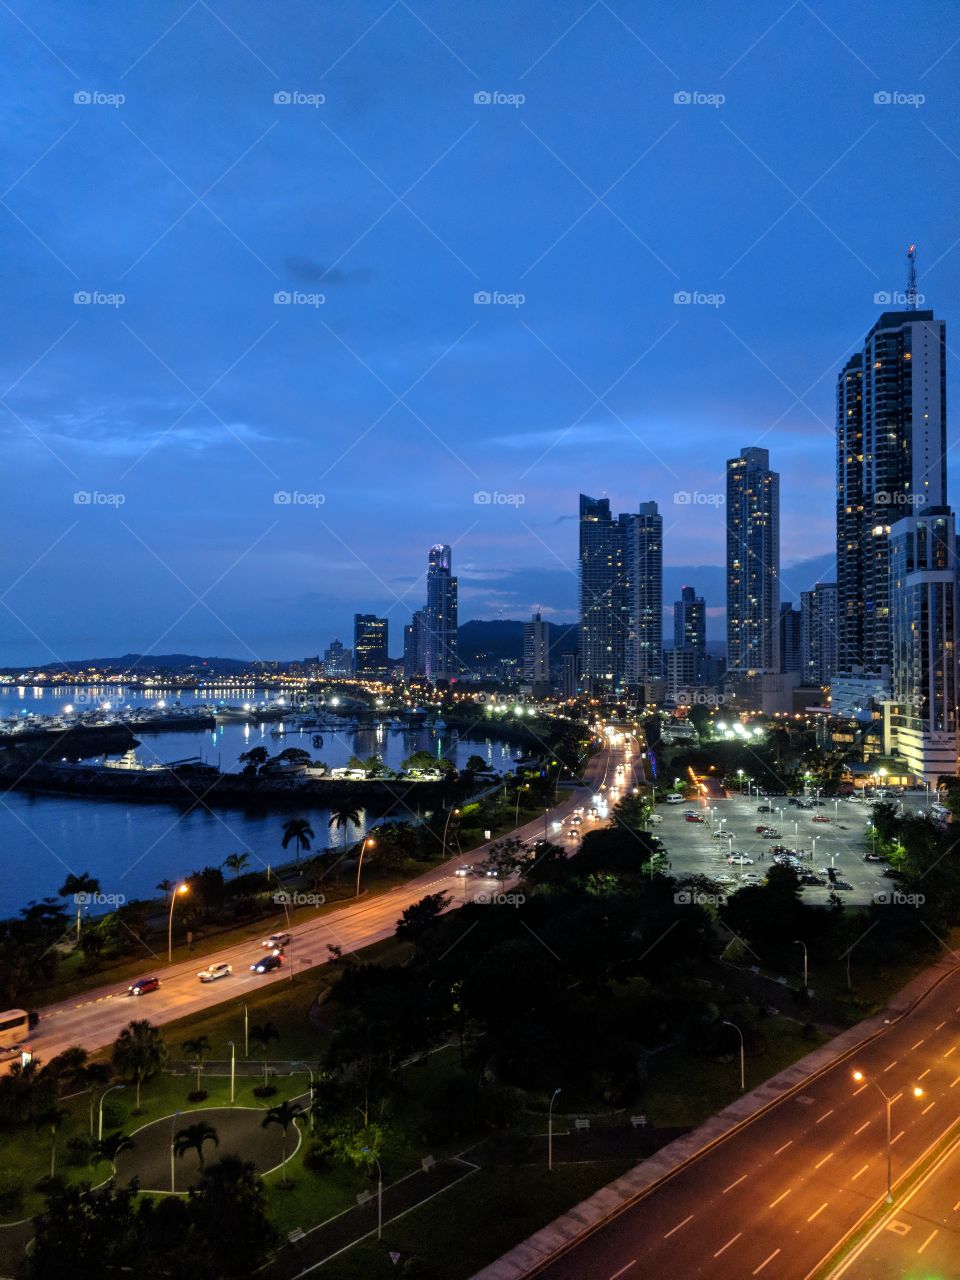 Panama City, Panama skyline at night